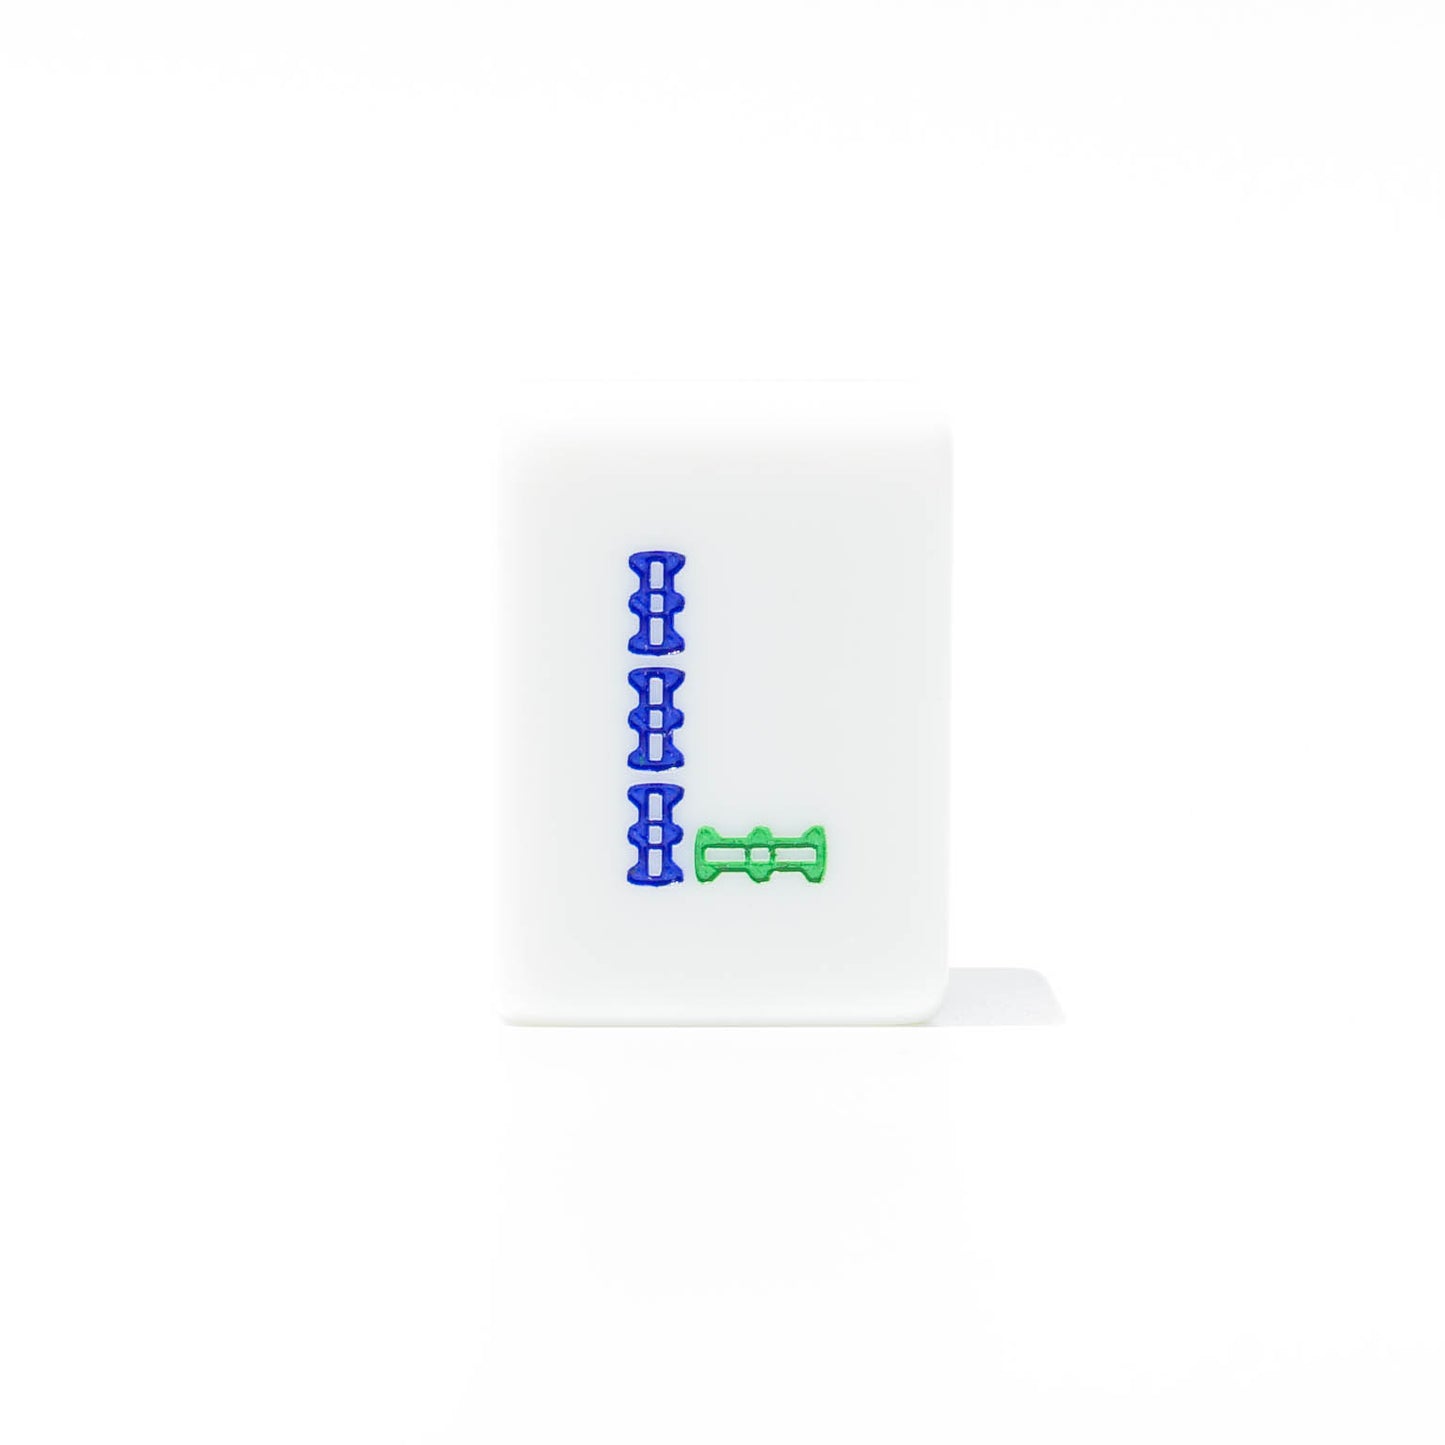 Single Mahjong Tile - Alphabet